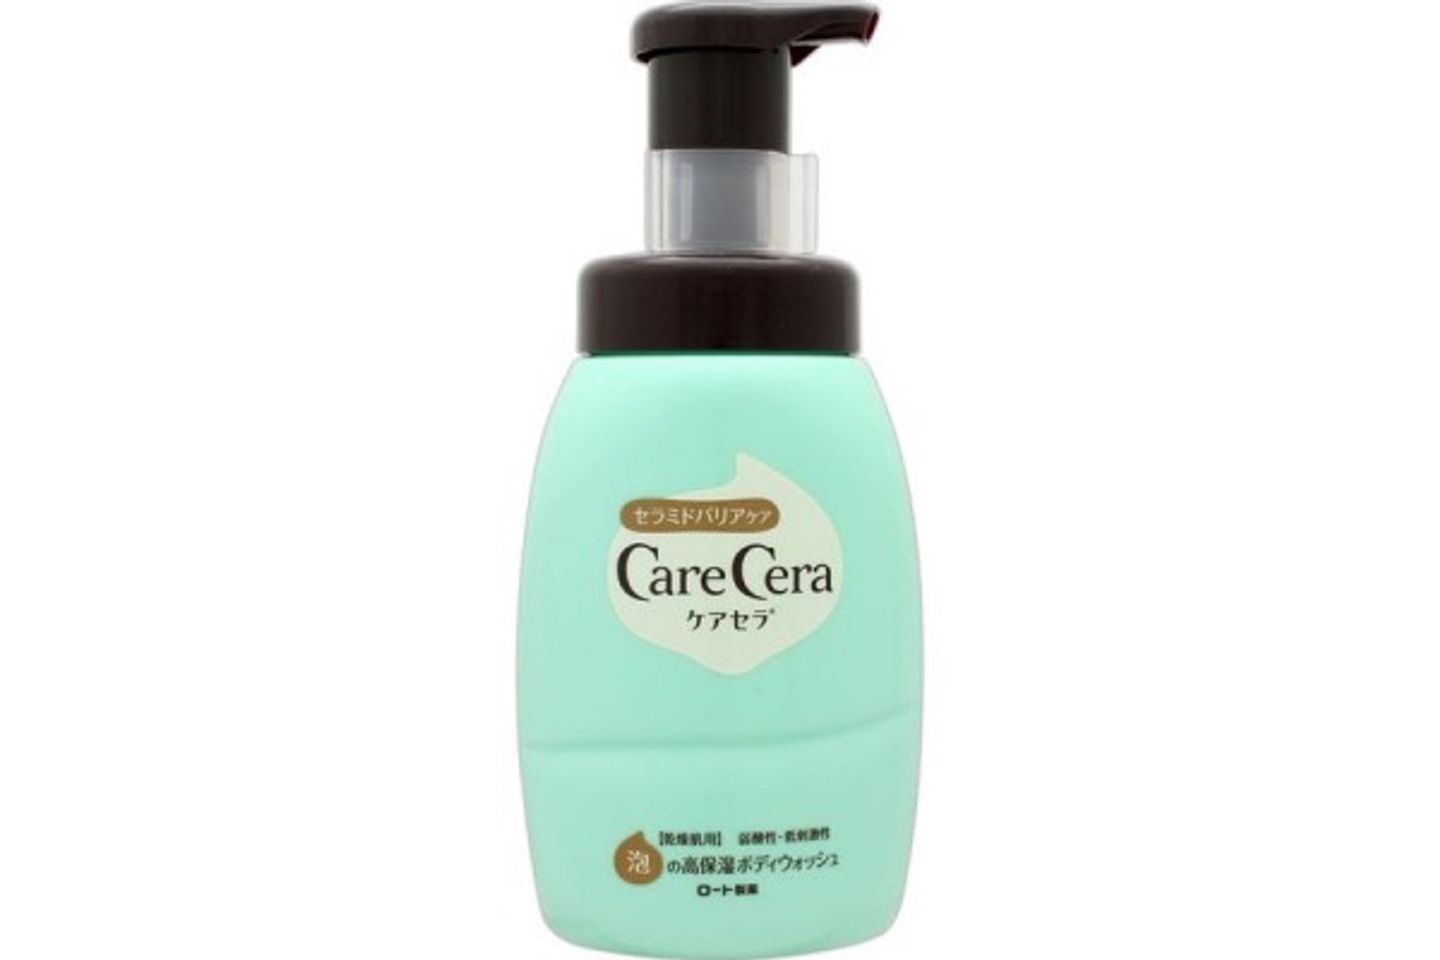 Sữa tắm Care Cera chai 450ml tự động tạo bọt mà không cần dùng phụ kiện, không chứa axit, không gây kích ứng da